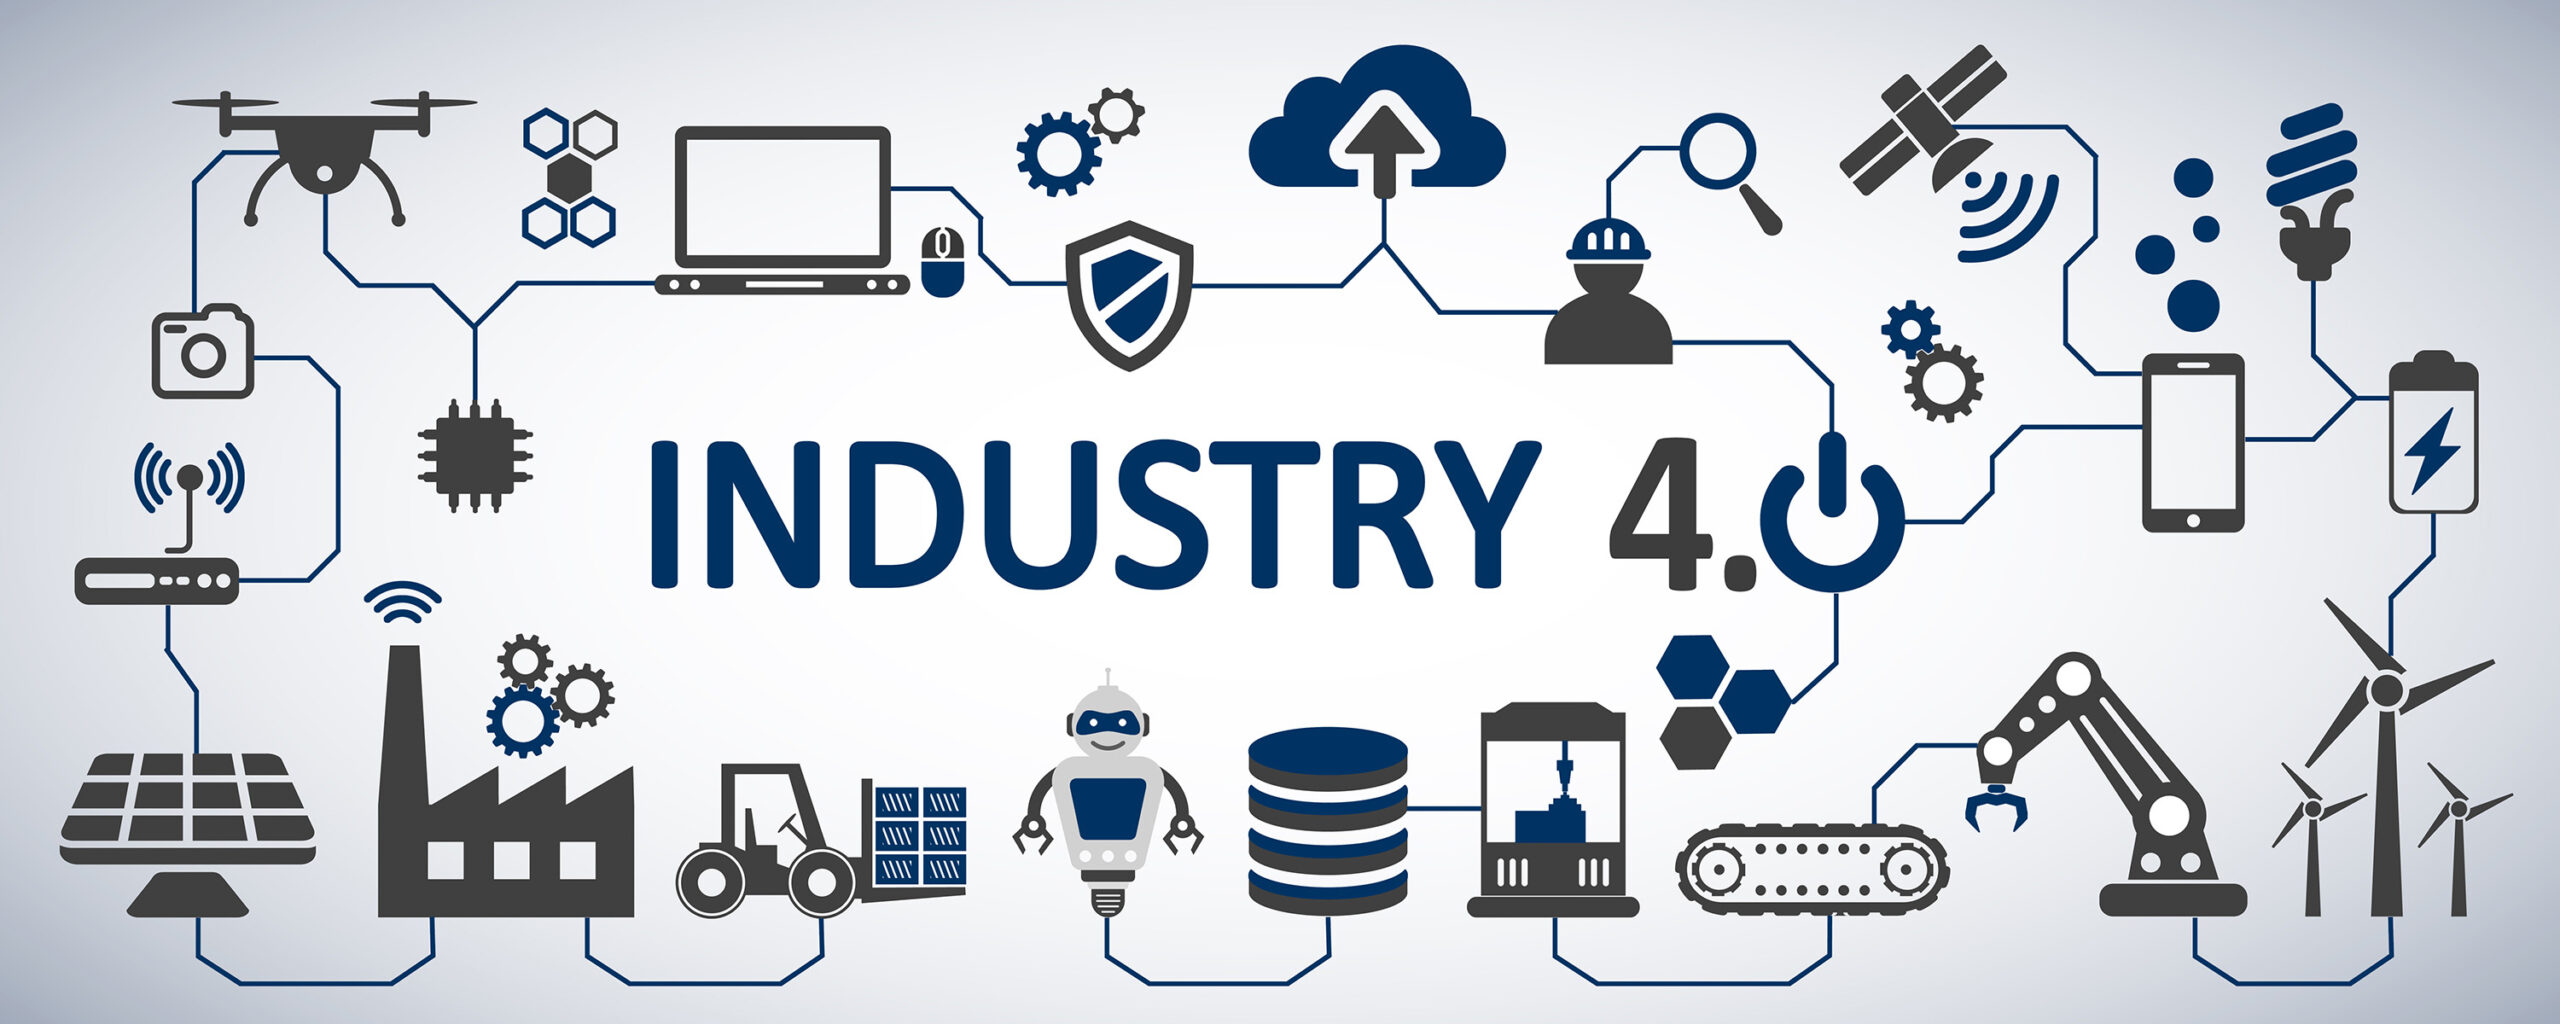 Definición Industria 4.0